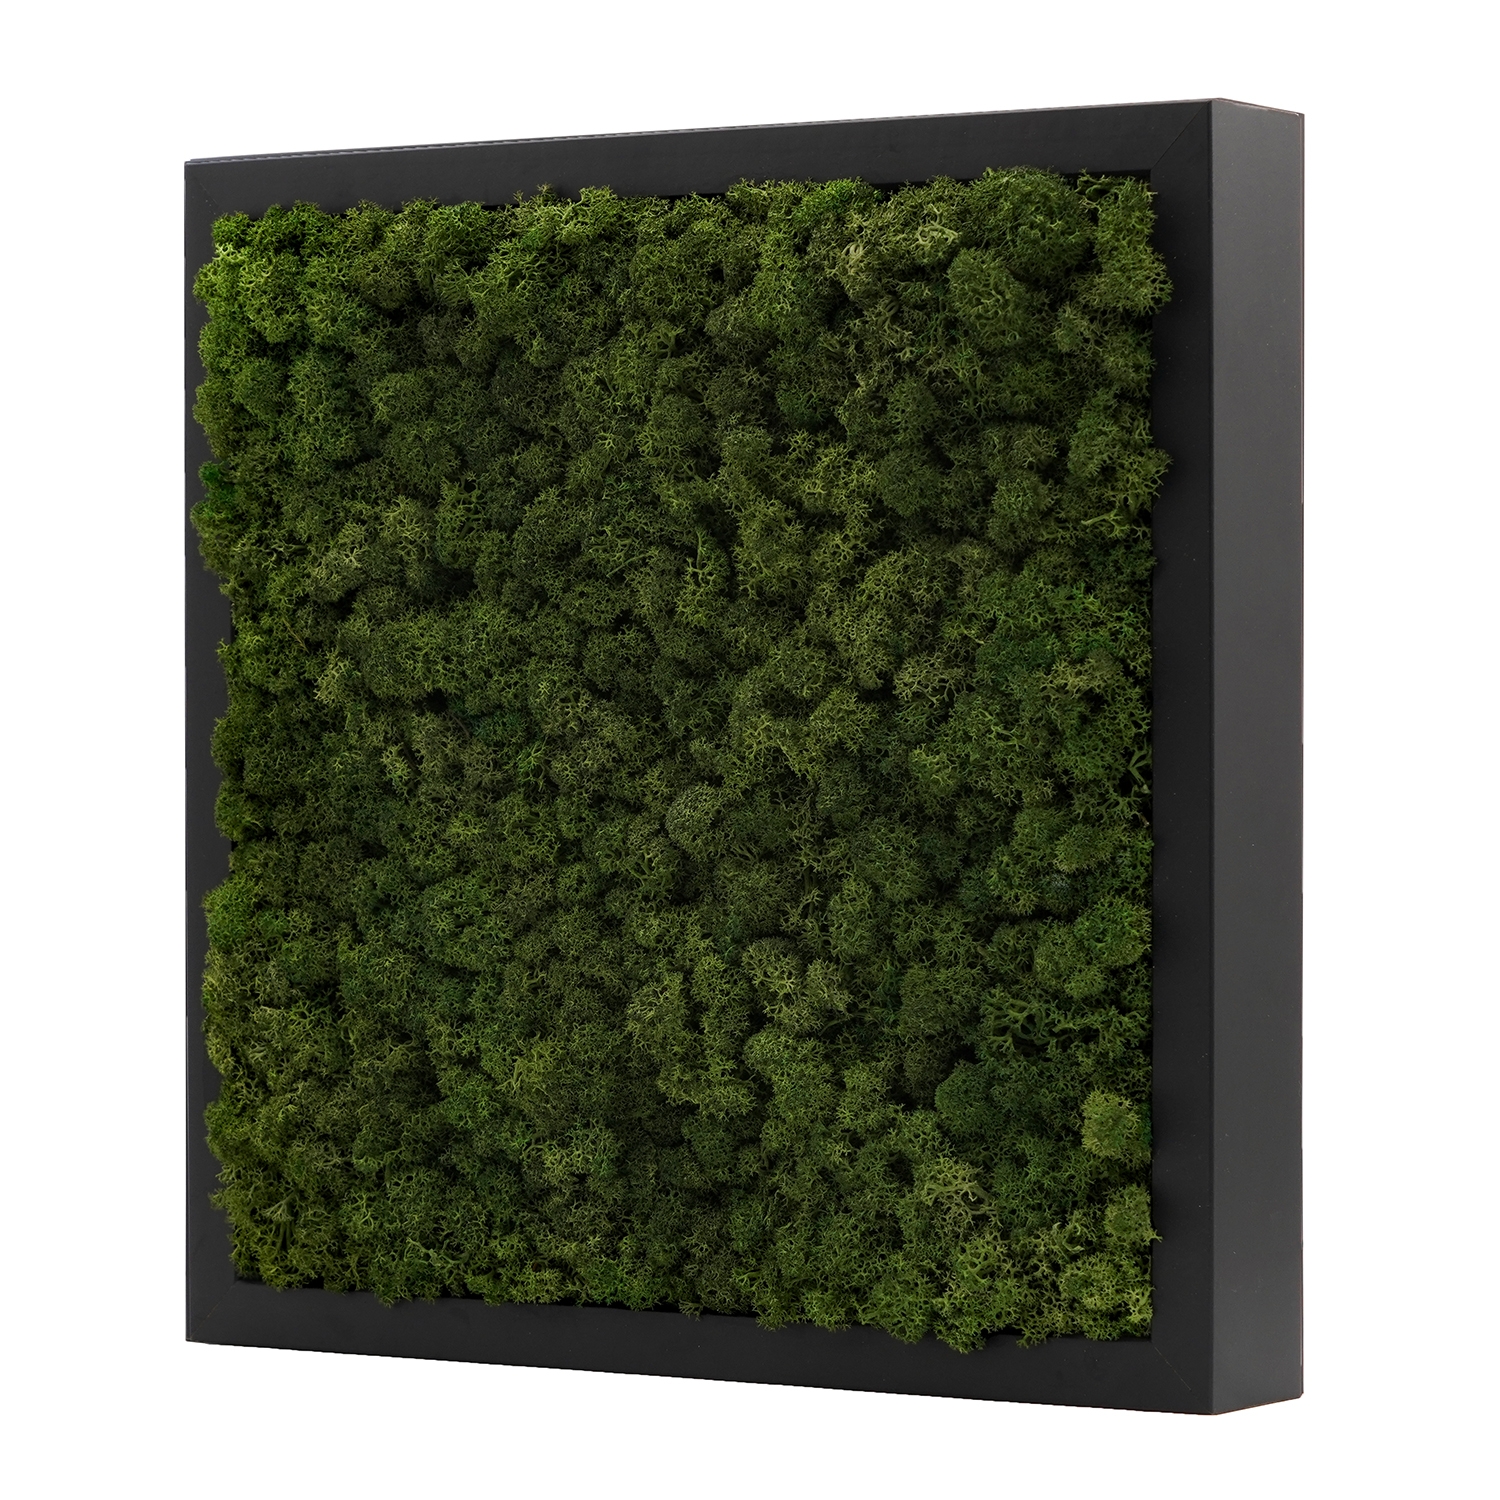 스칸디아모스액자 프라모프레임_블랙 ( 25색상 )실내 공기정화식물 벽면인테리어소품 천연이끼 스칸디아모스 식물액자 플랜테리어